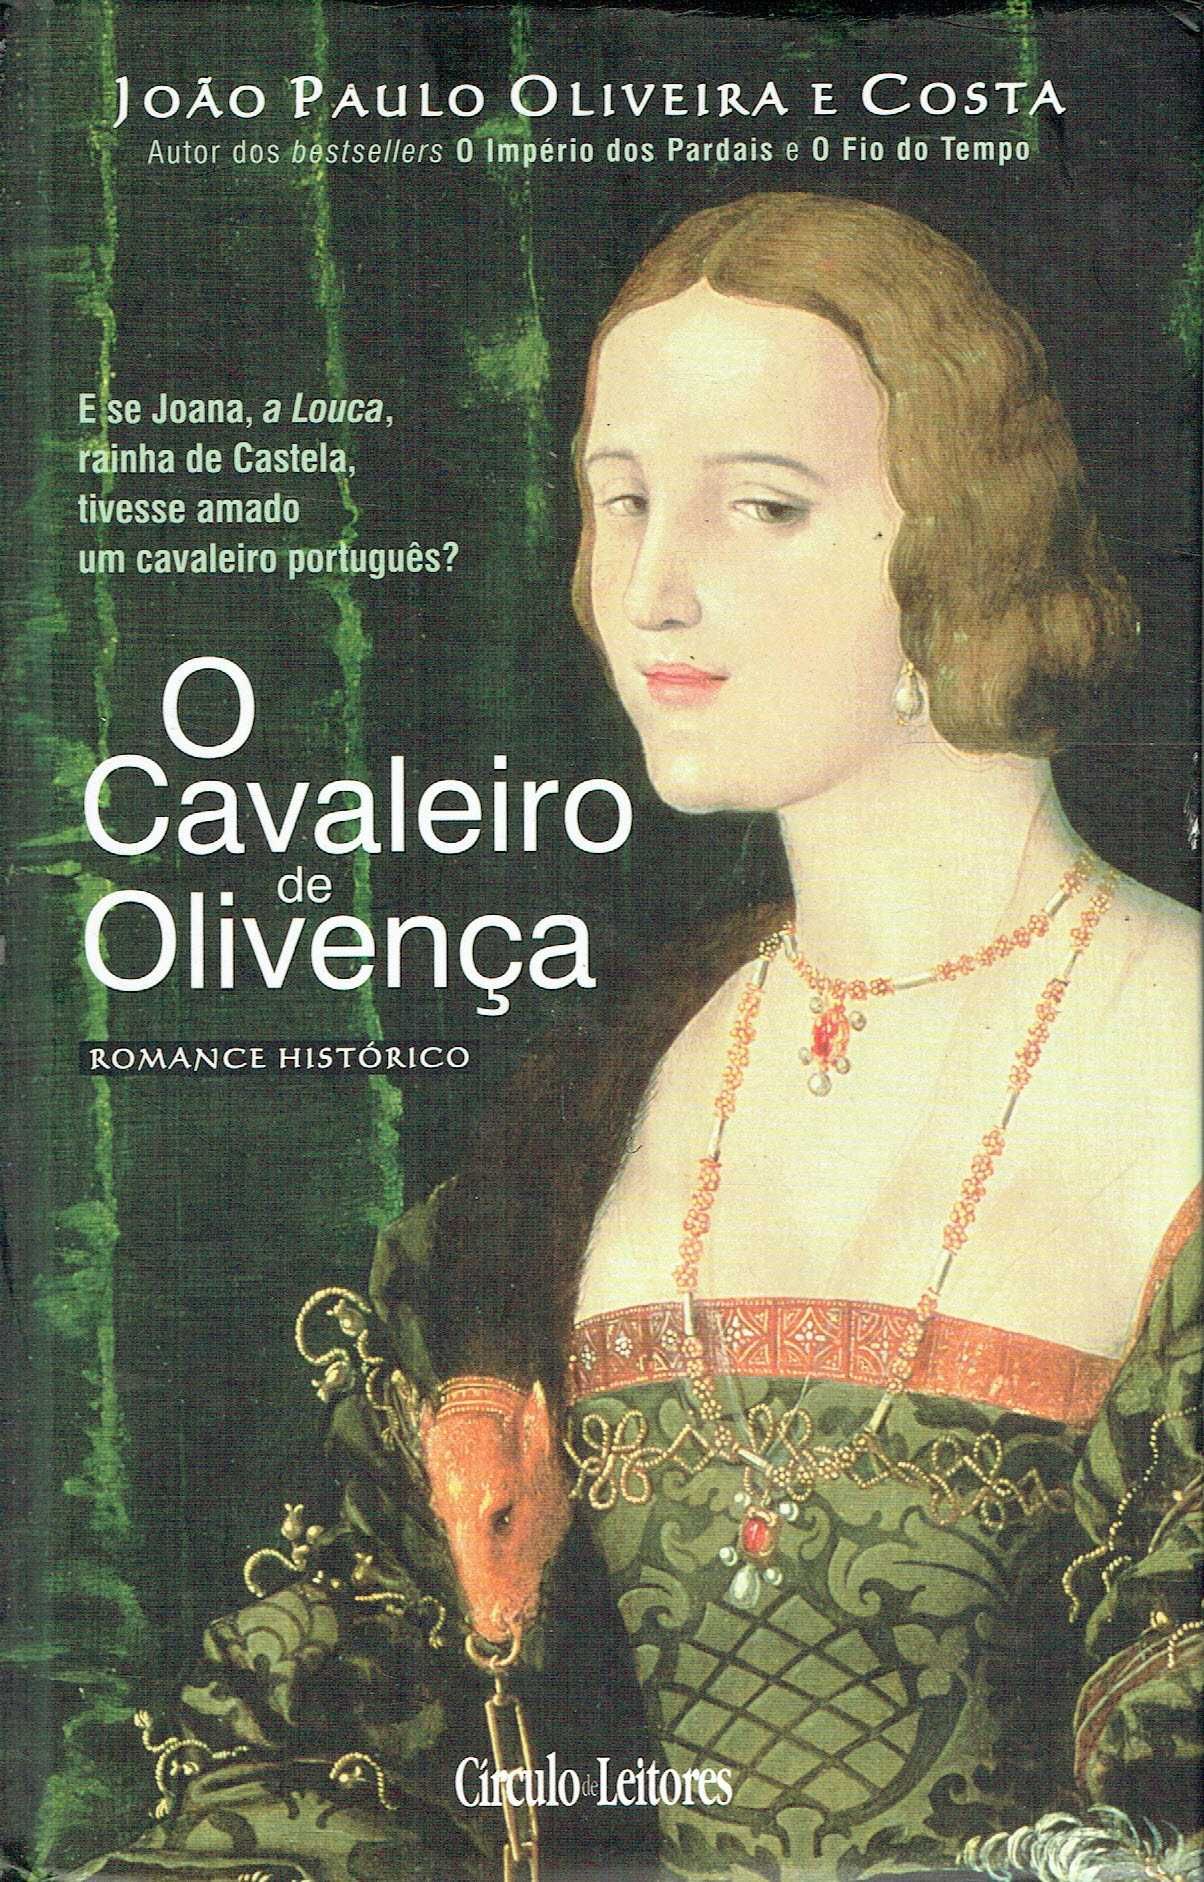 14882

O Cavaleiro de Olivença
de João Paulo Oliveira e Costa